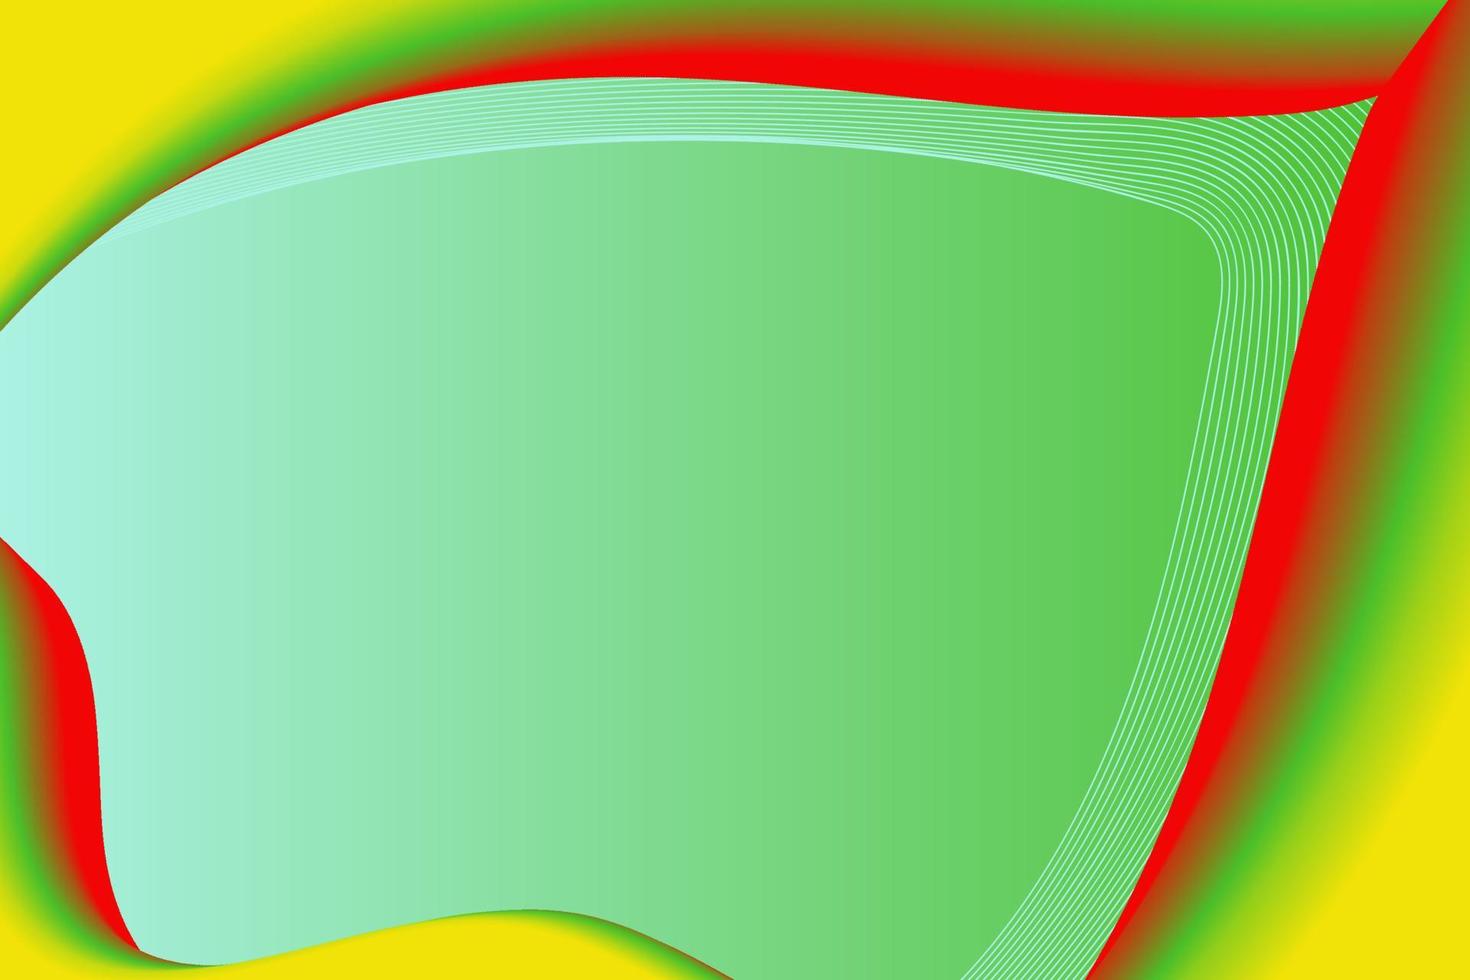 diseño de fondo abstracto simple y minimalista con color verde, rojo y amarillo vector